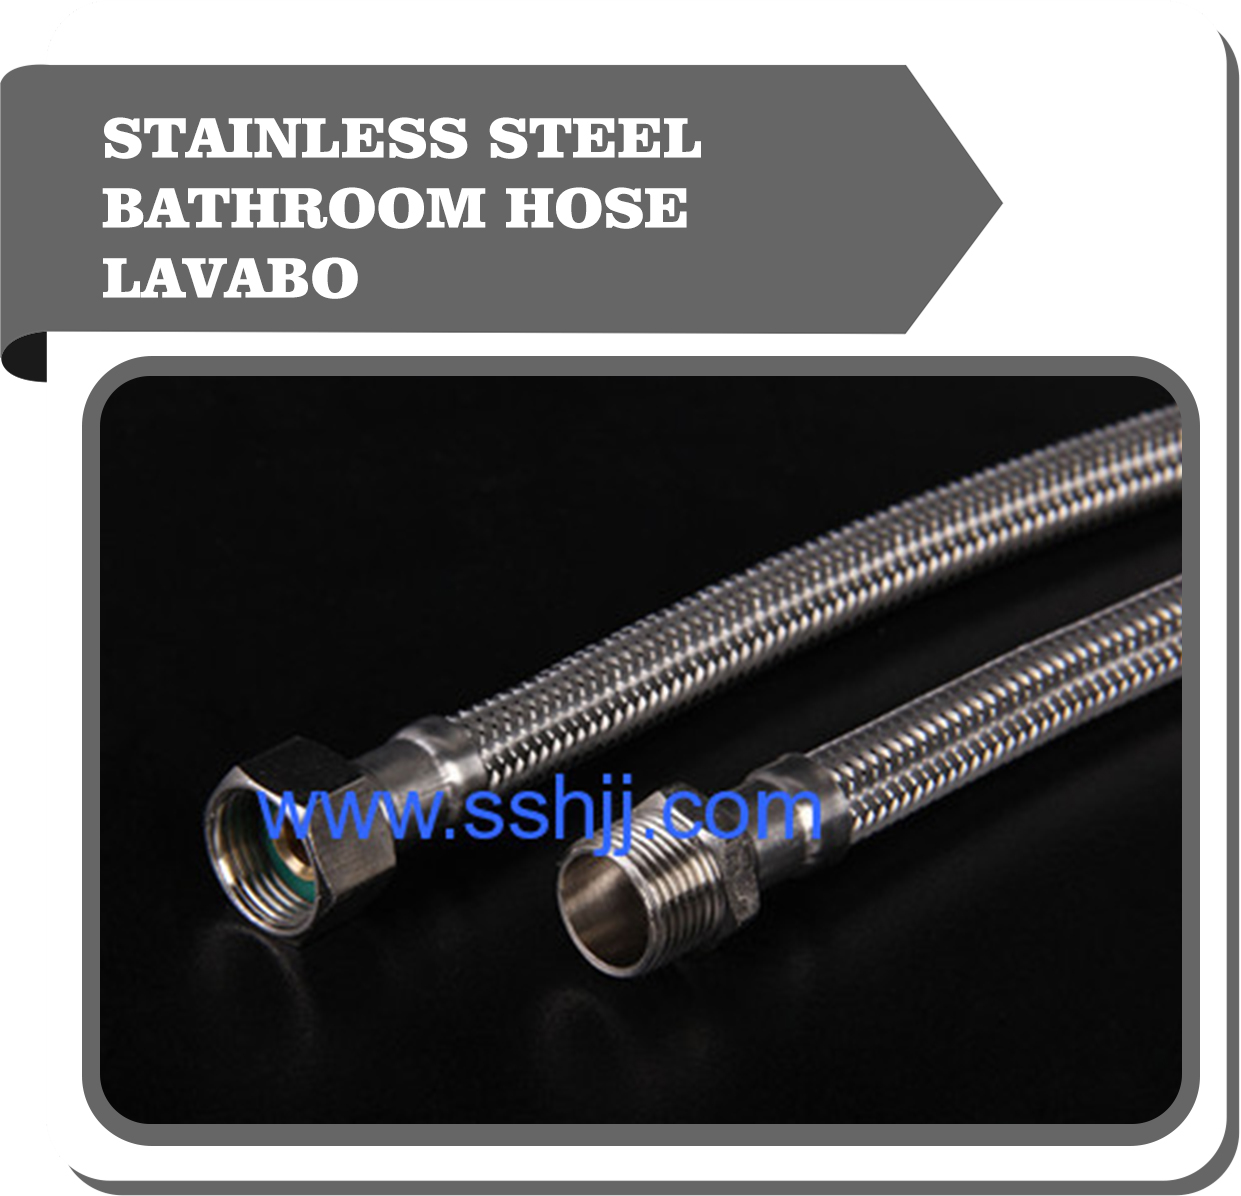 Stainless steel bathroom hose